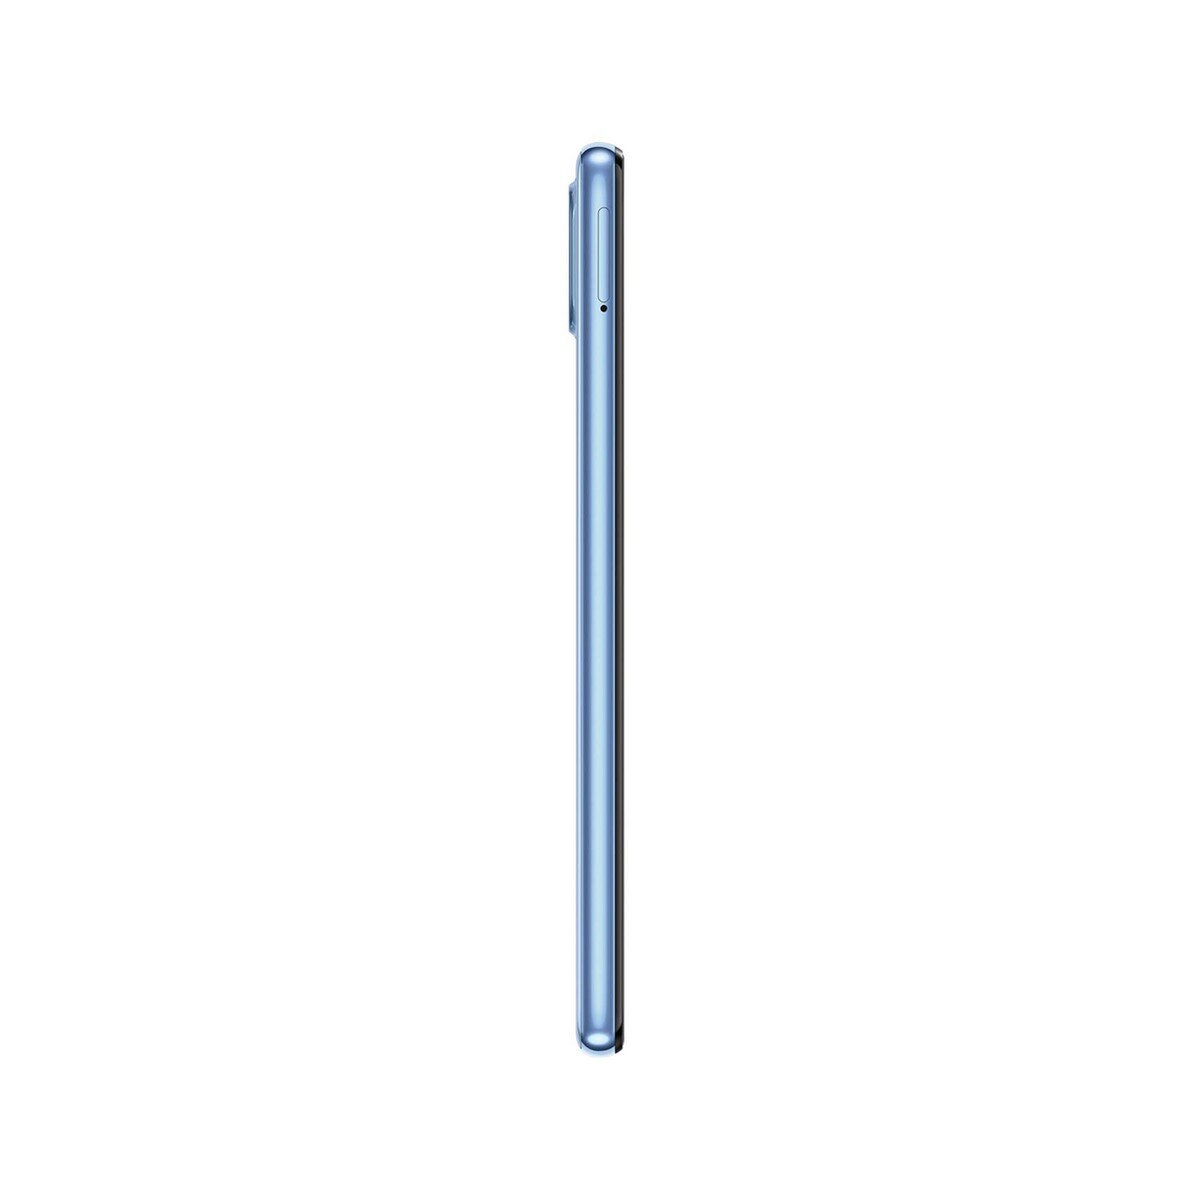 Samsung Galaxy-M32 SM-M325FLBGMEA 128GB Blue